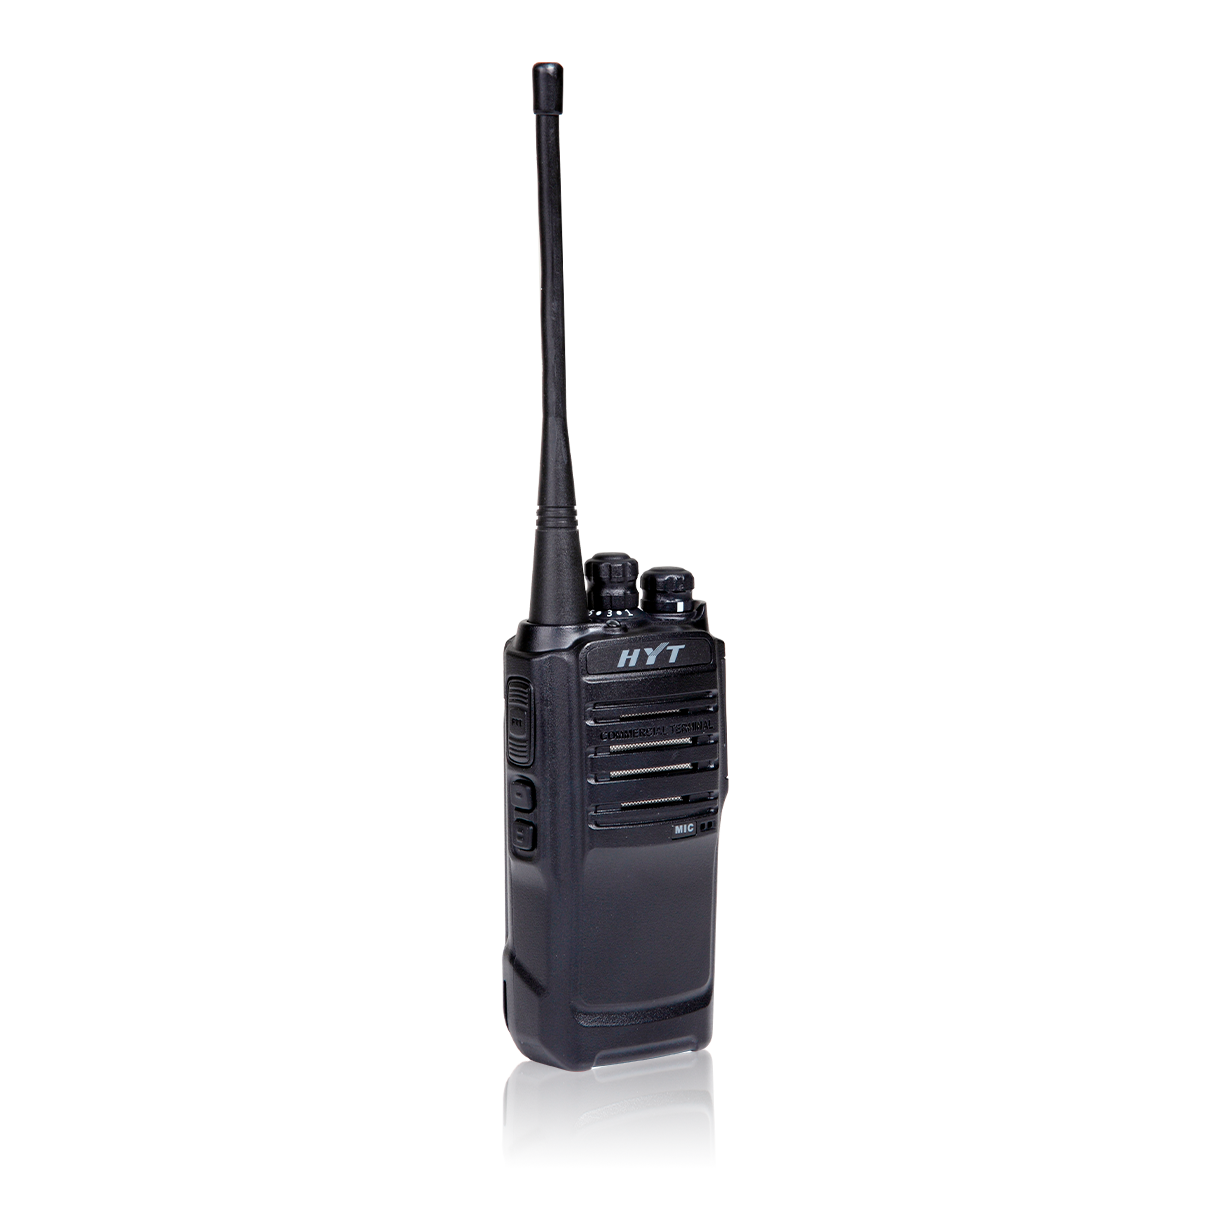 Hytera TC-508 Аналоговая портативная радиостанция